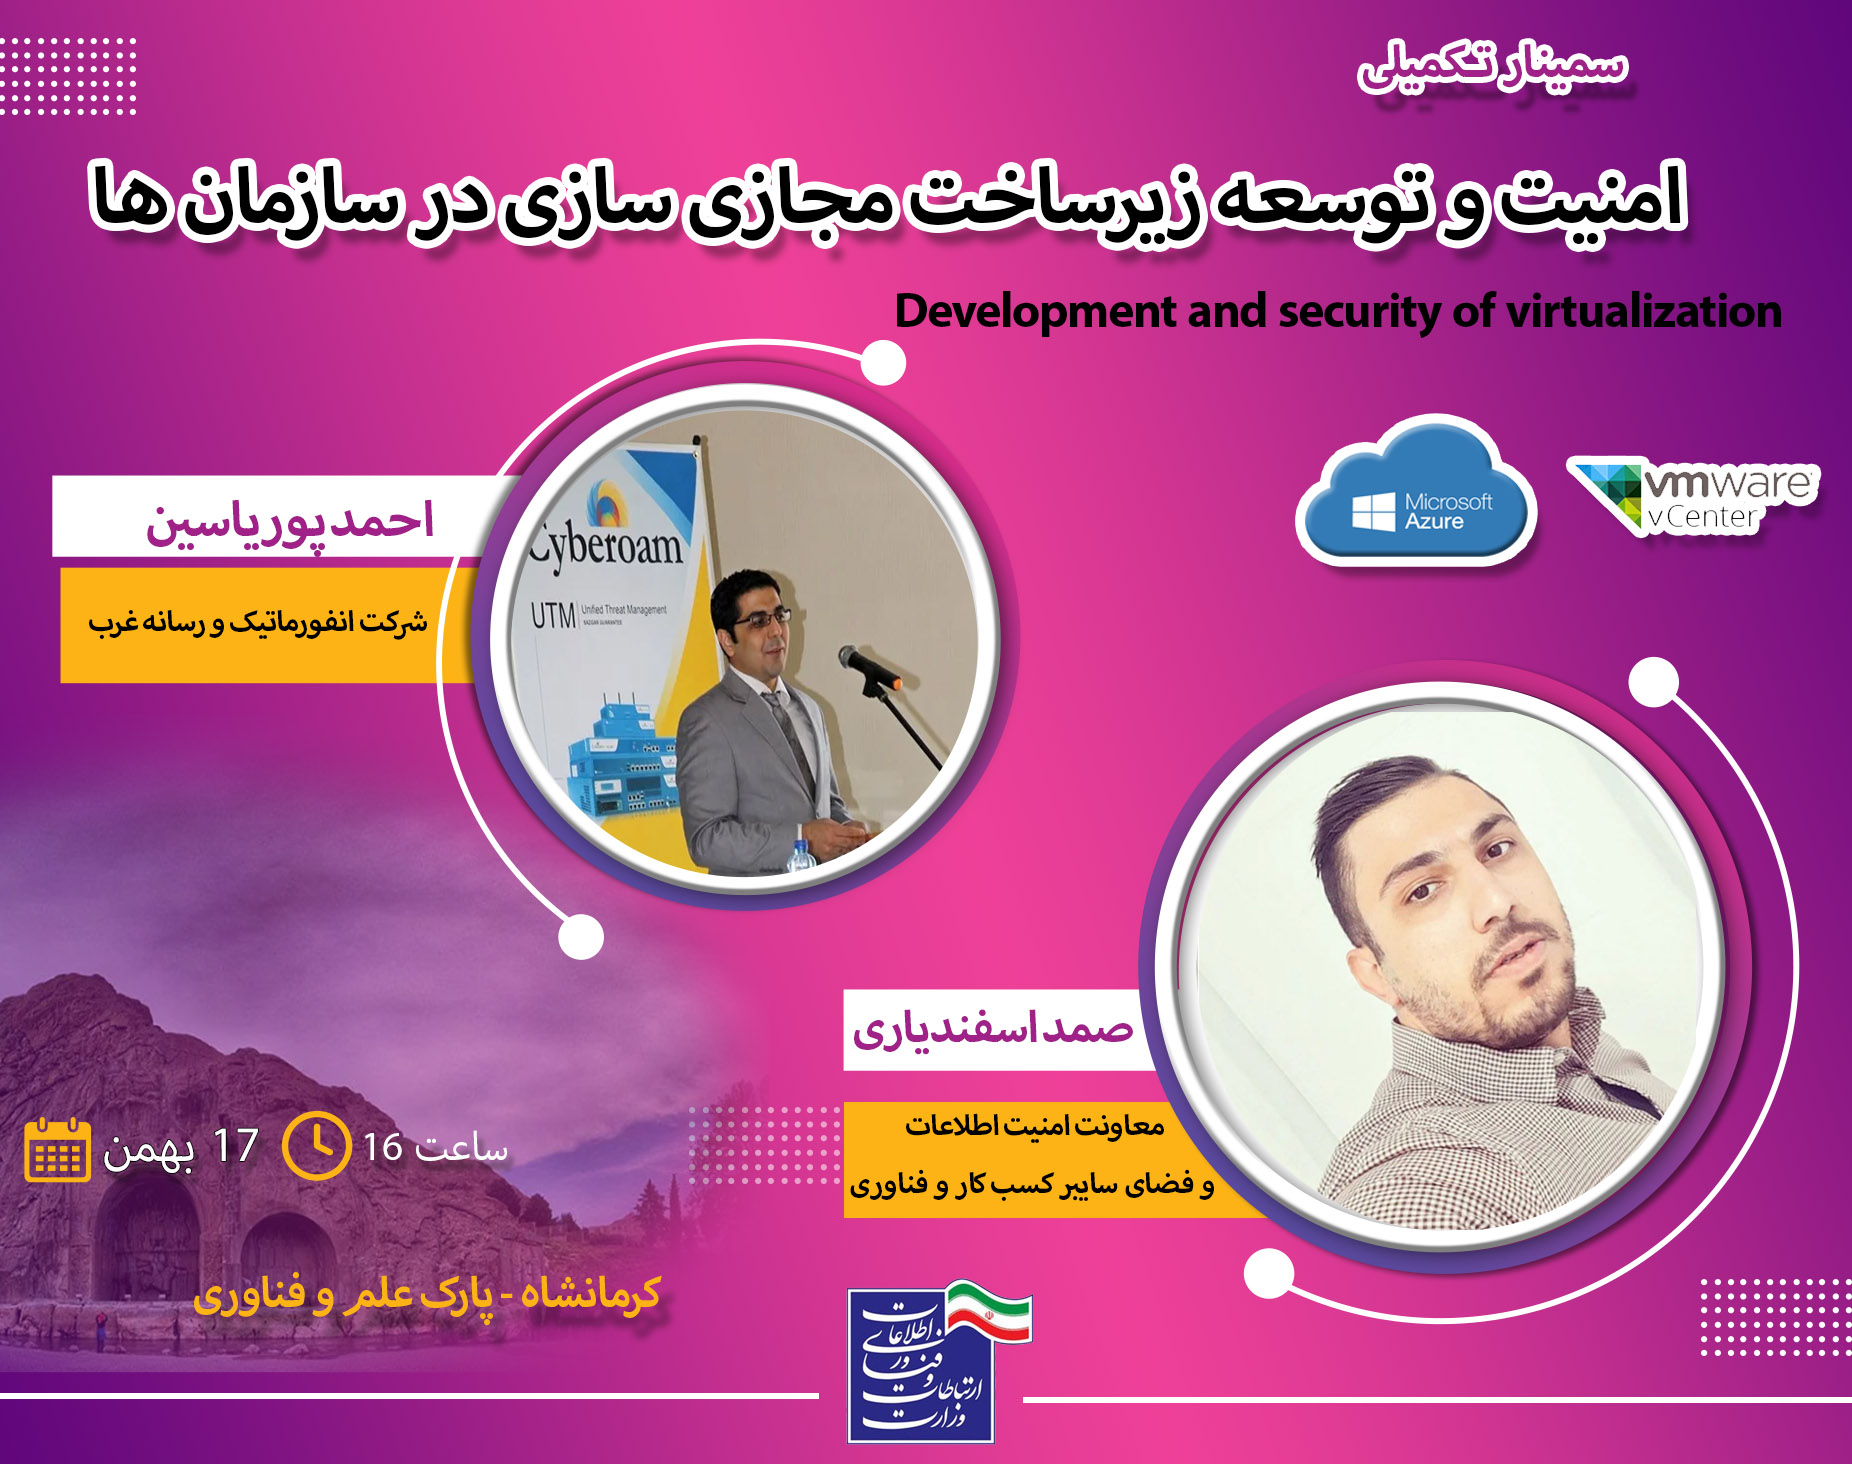 سمینار امنیت و توسعه زیرساخت مجازی سازی در سازمان های استان کرمانشاه